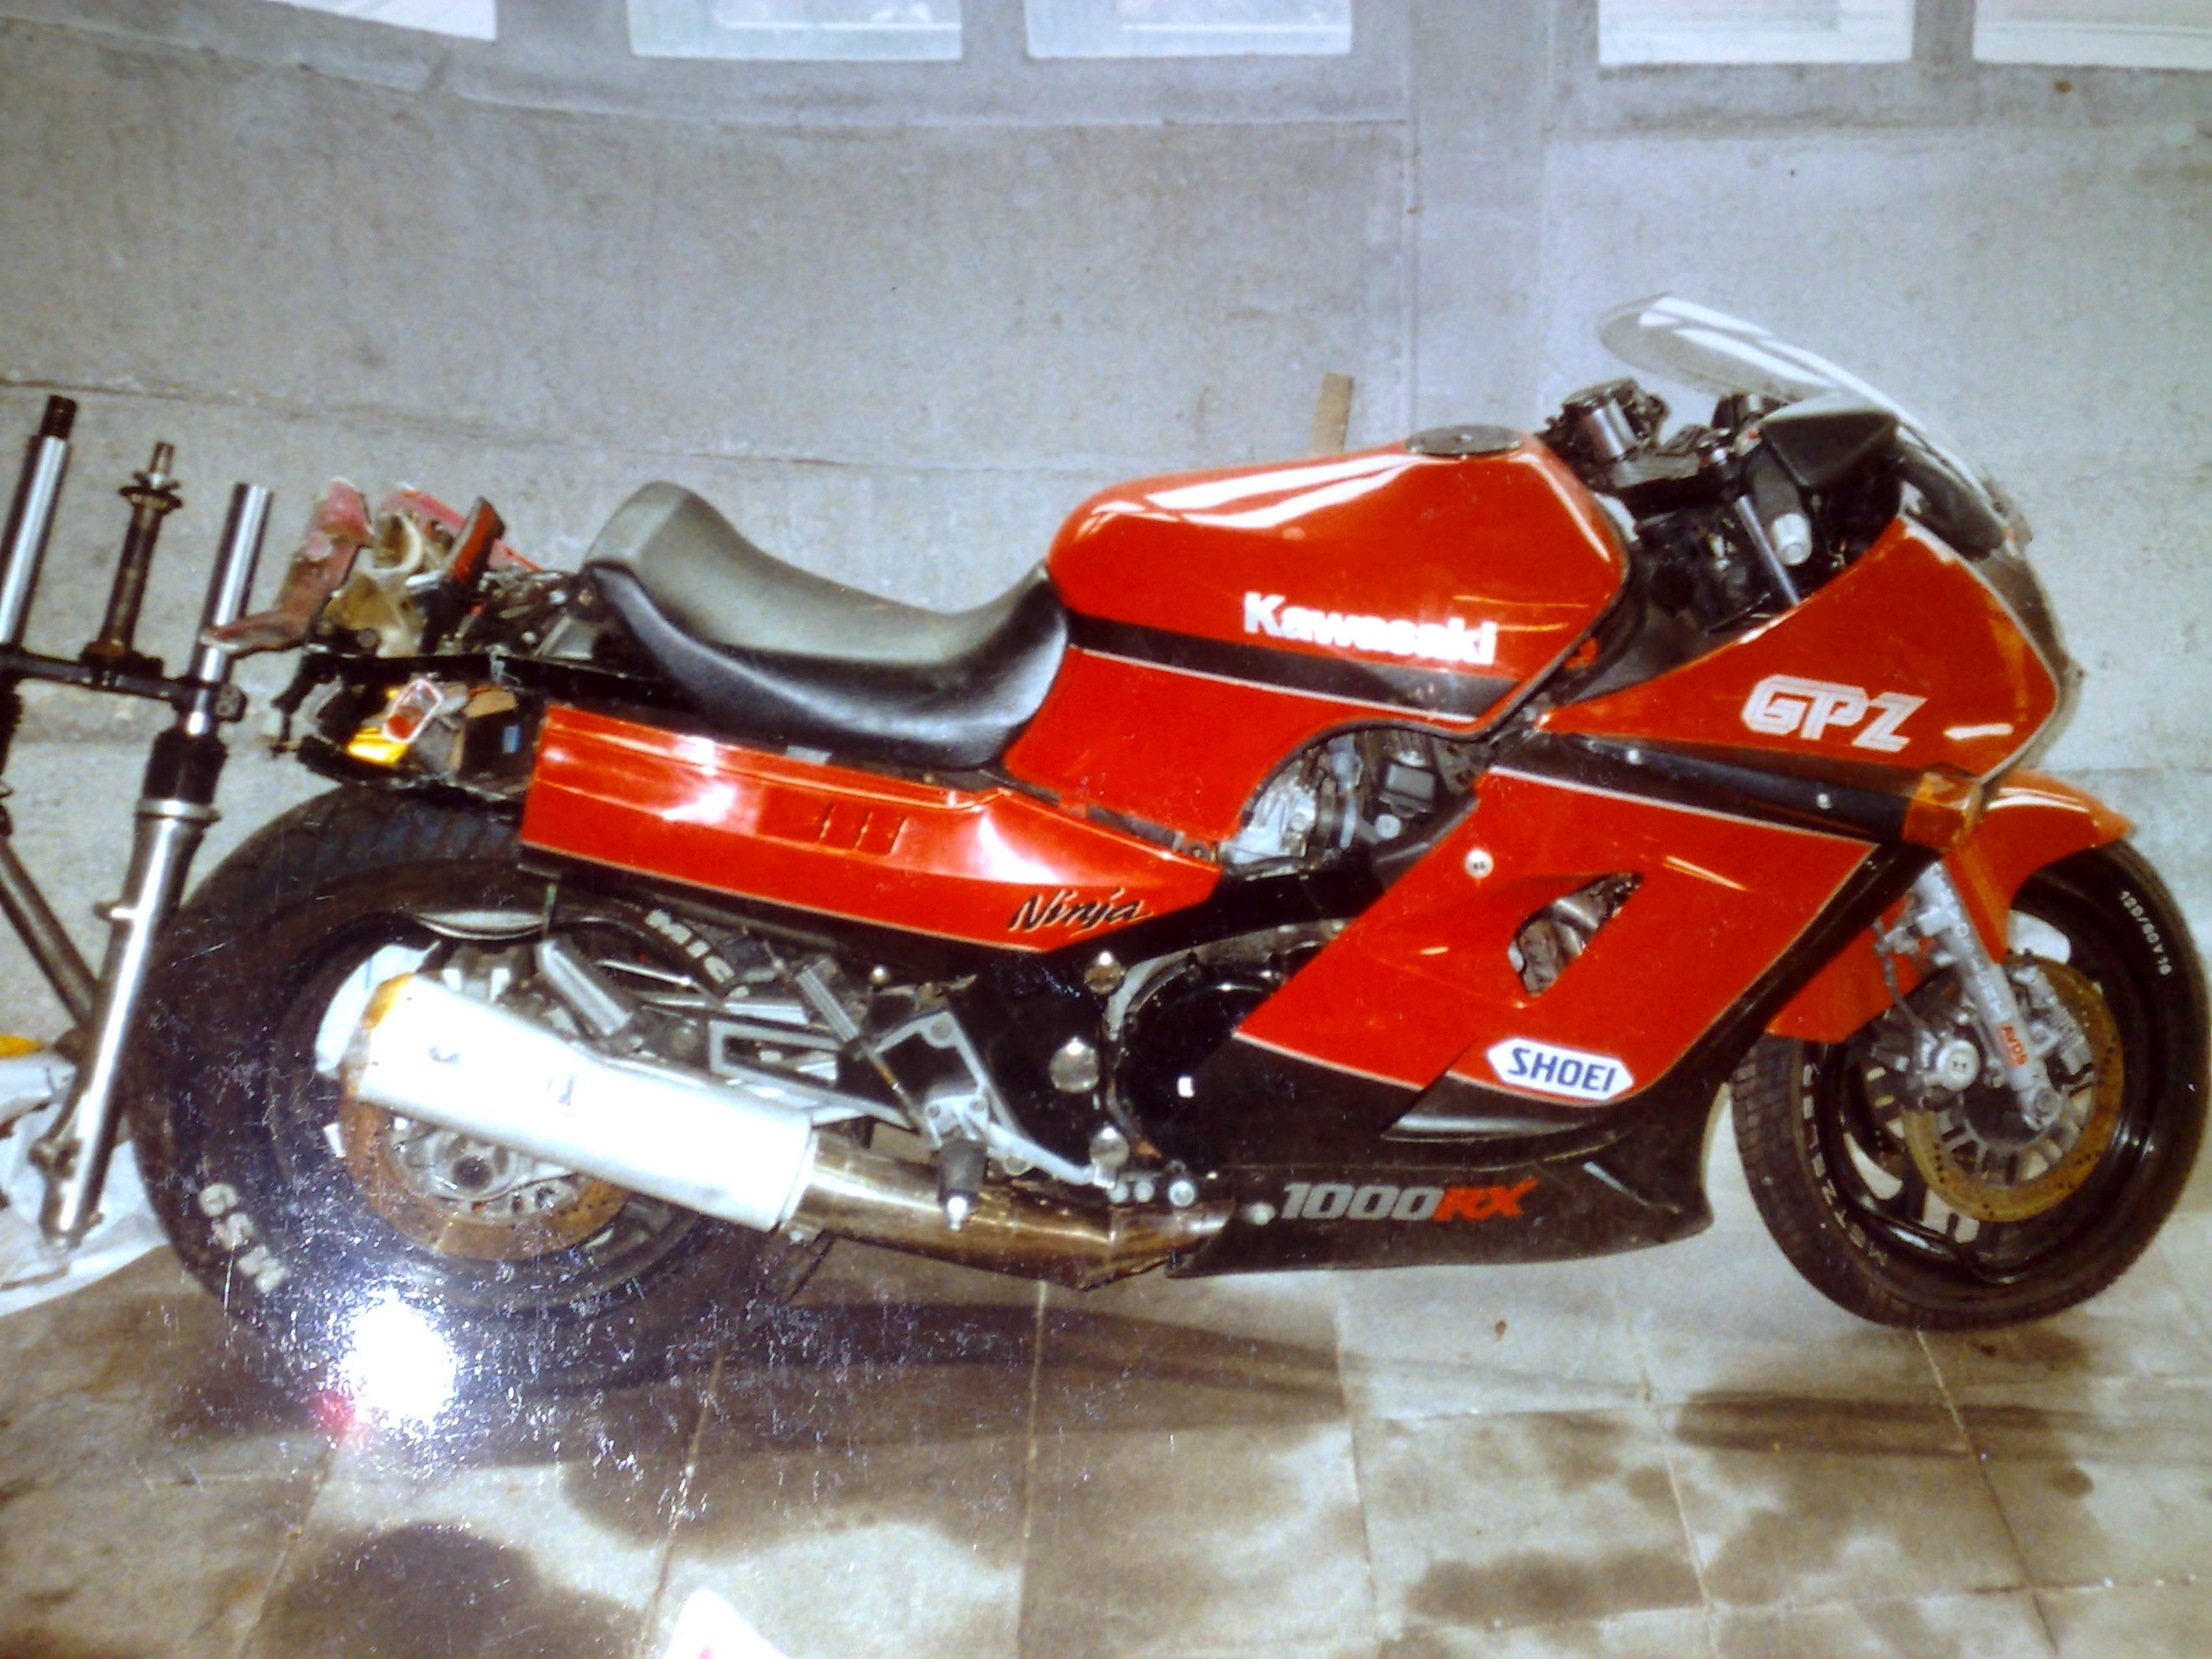 Kawasaki GPZ 1000 RX 1987 photo - 6